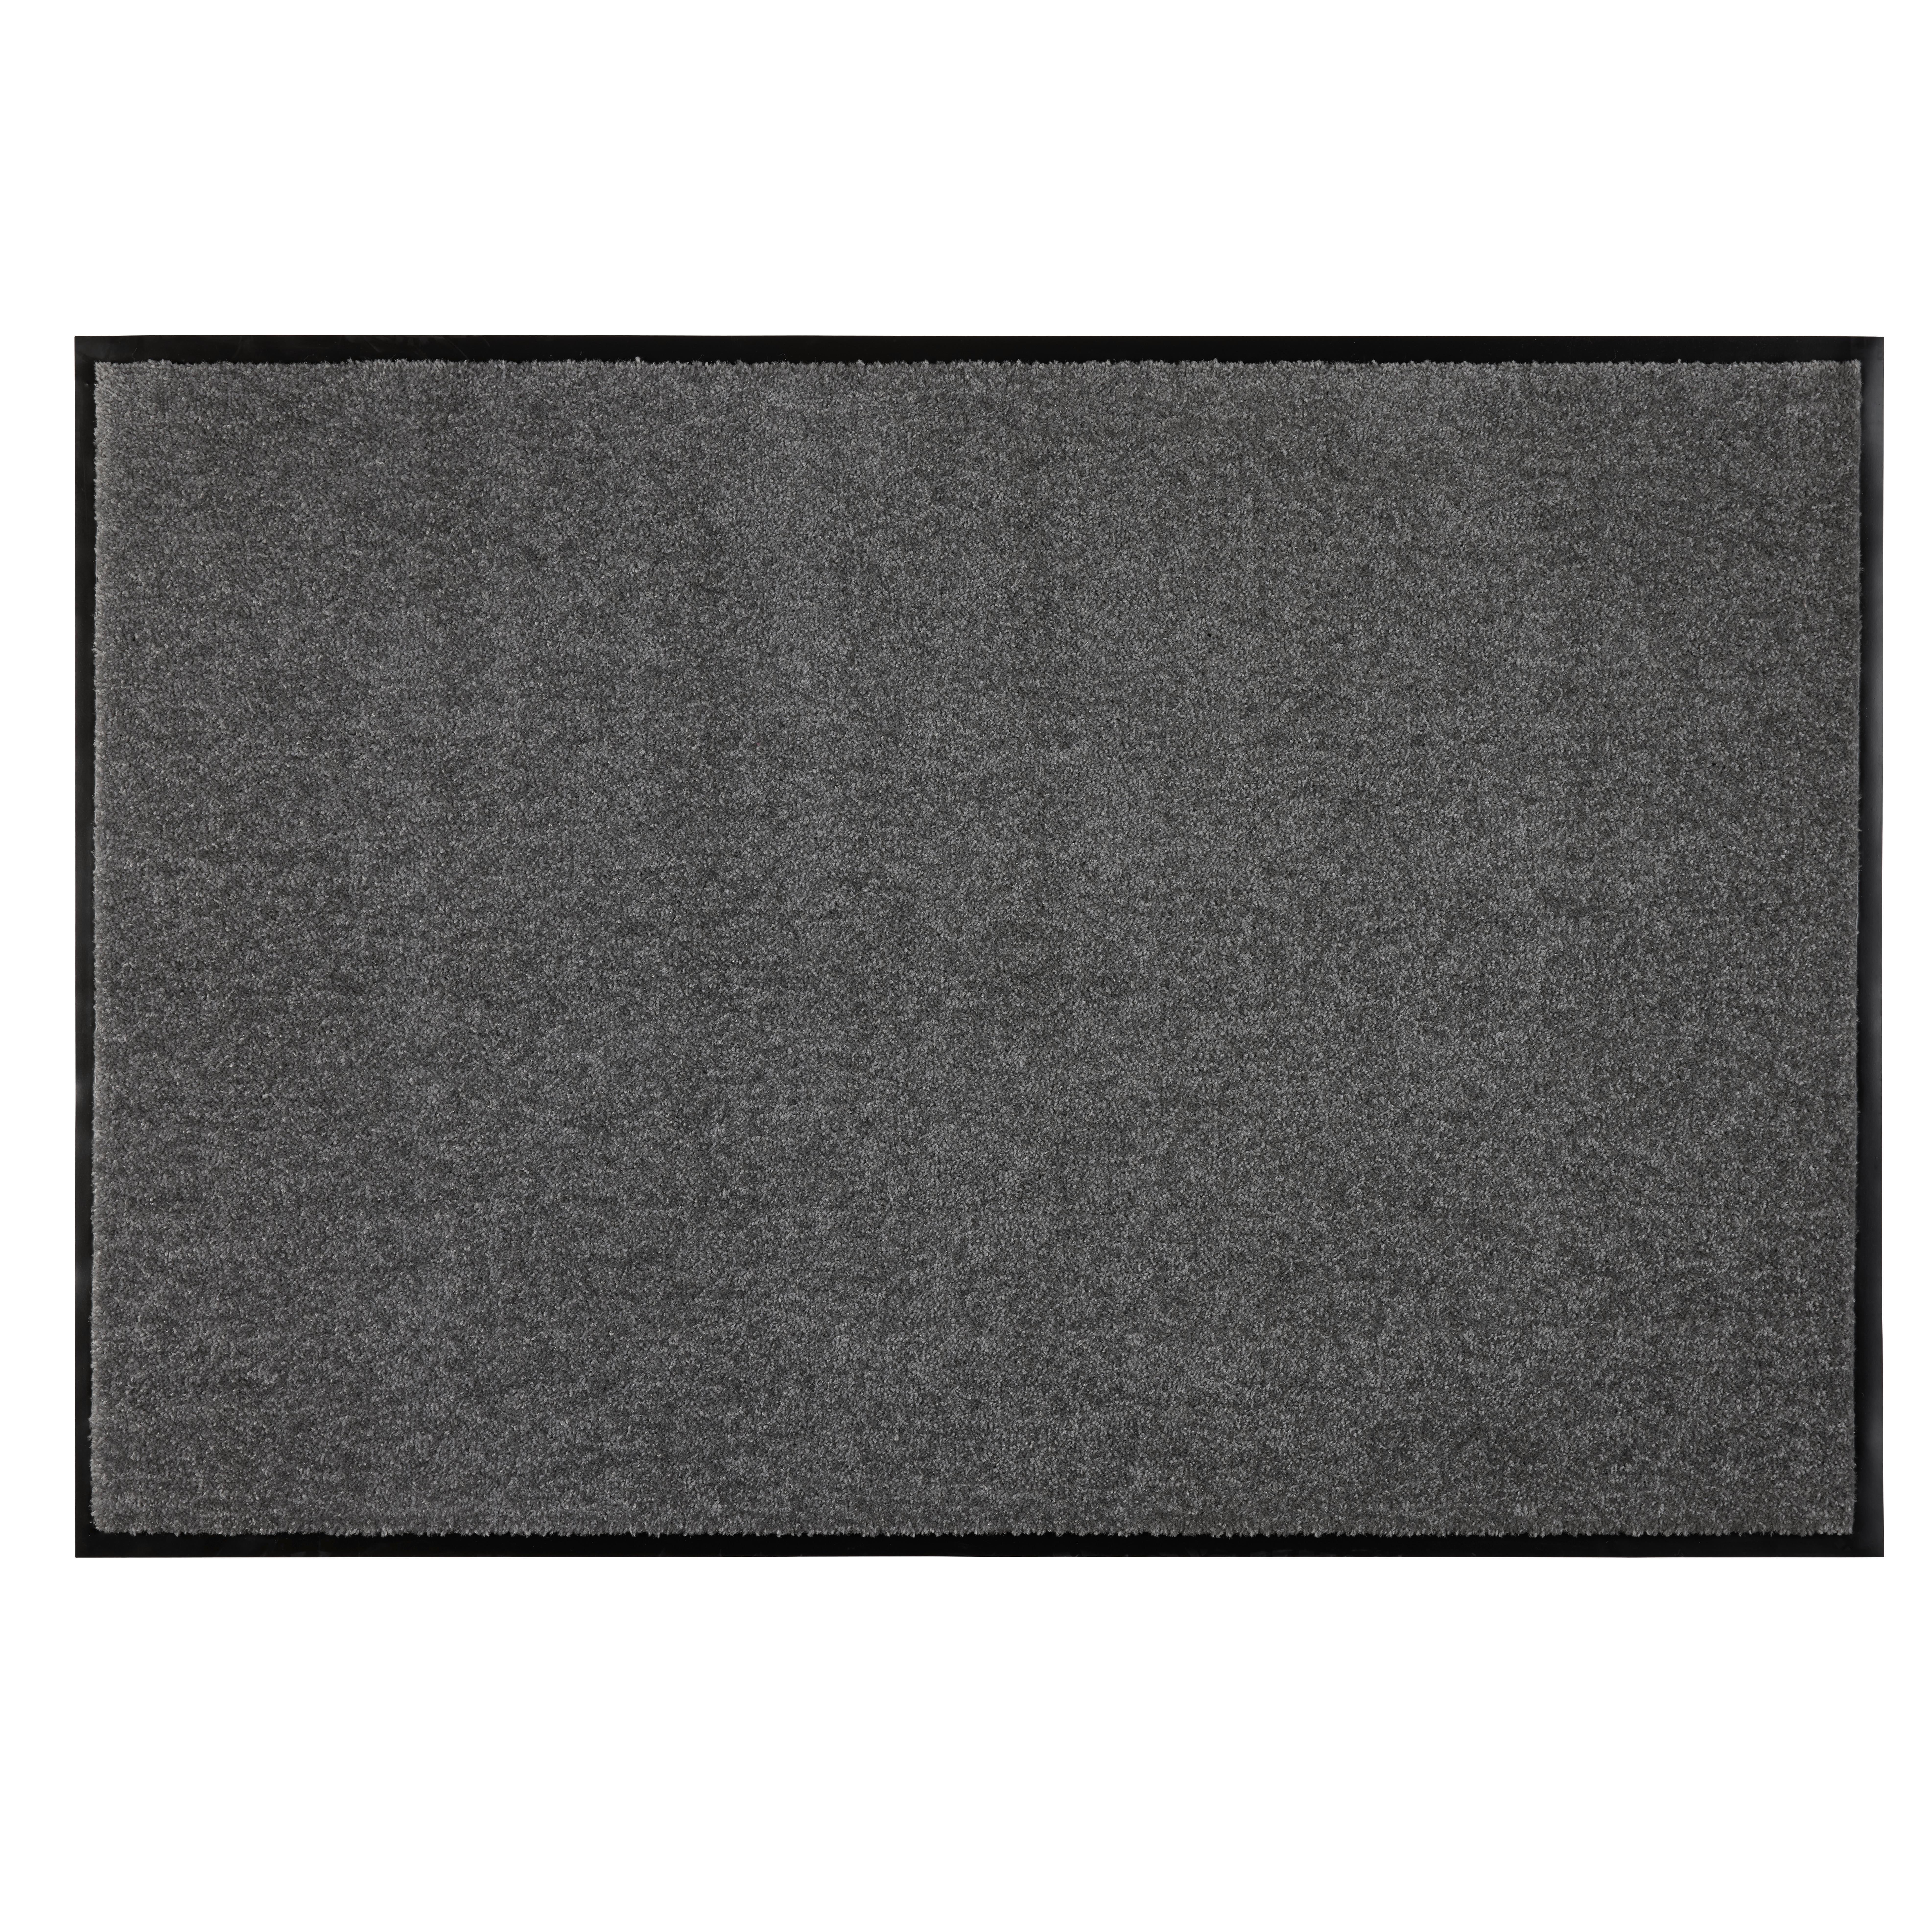 Dveřní Rohožka Eton 3 - černá, Moderní, textil (80/120cm) - Modern Living